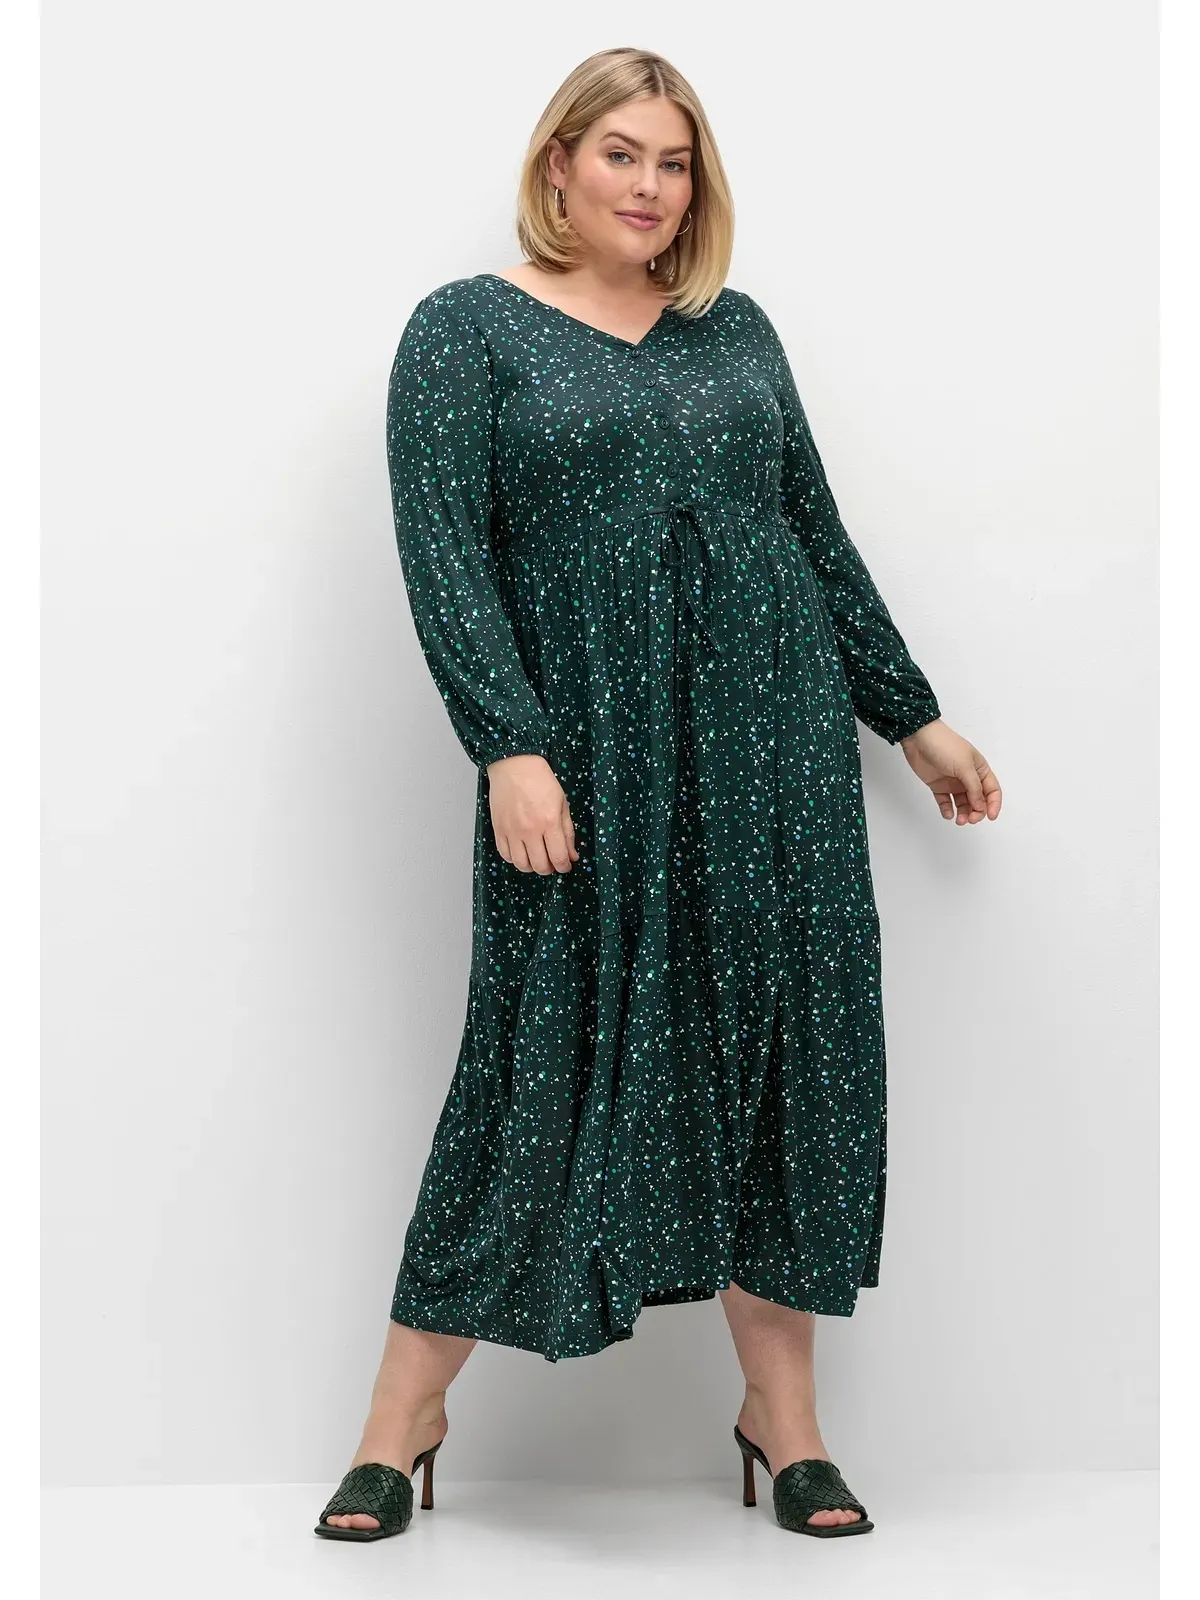 Jerseykleid SHEEGO "Große Größen" Gr. 56, Normalgrößen, grün (tiefgrün gemustert) Damen Kleider Freizeitkleider